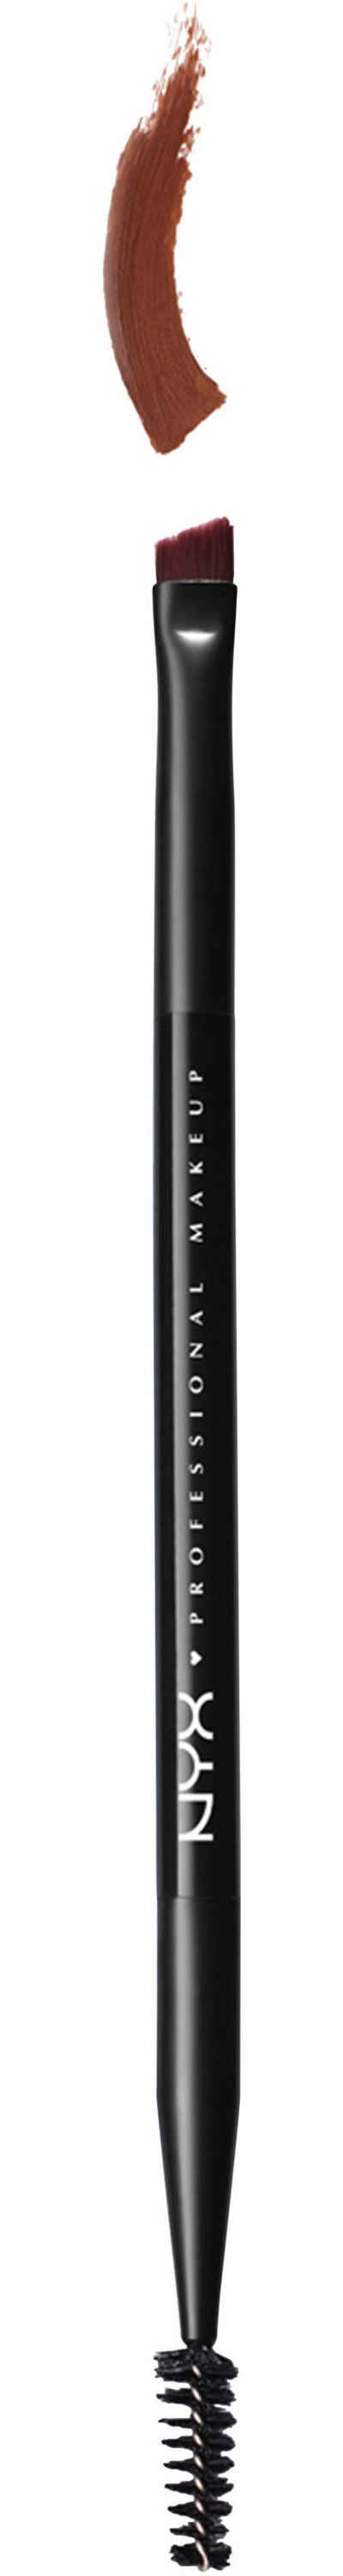 NYX Augenbrauen-Stift